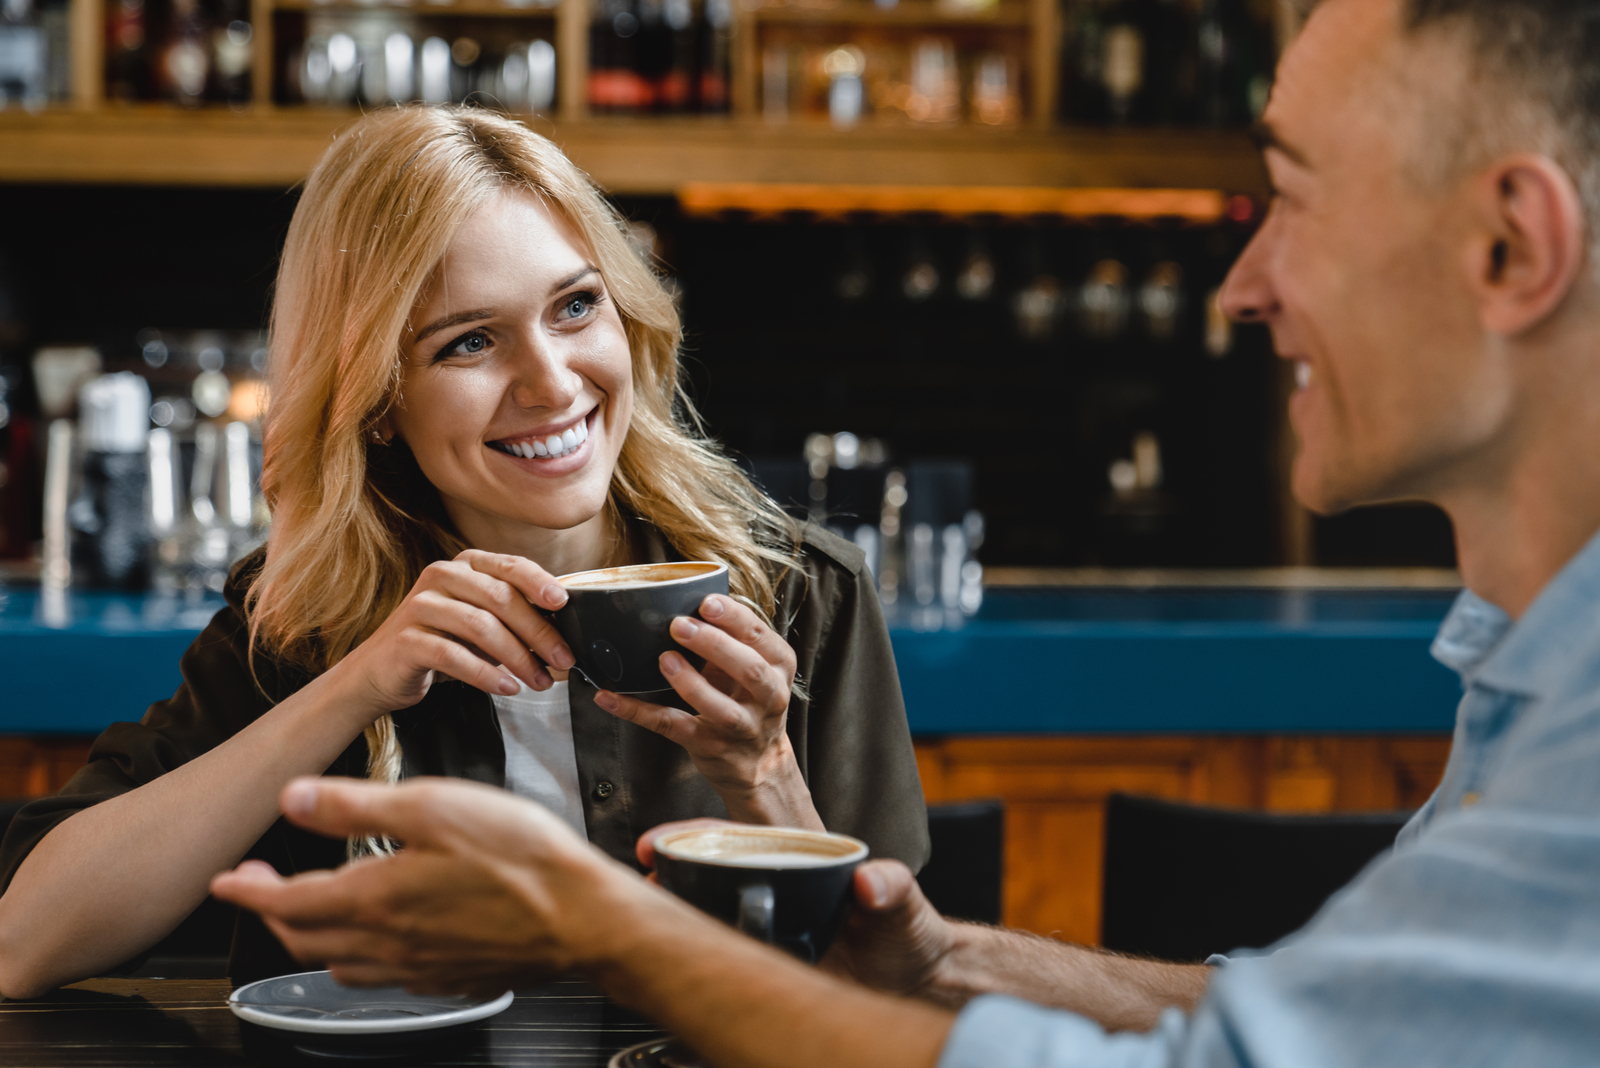 una donna sorridente con lunghi capelli biondi parla con un uomo mentre beve un caffè